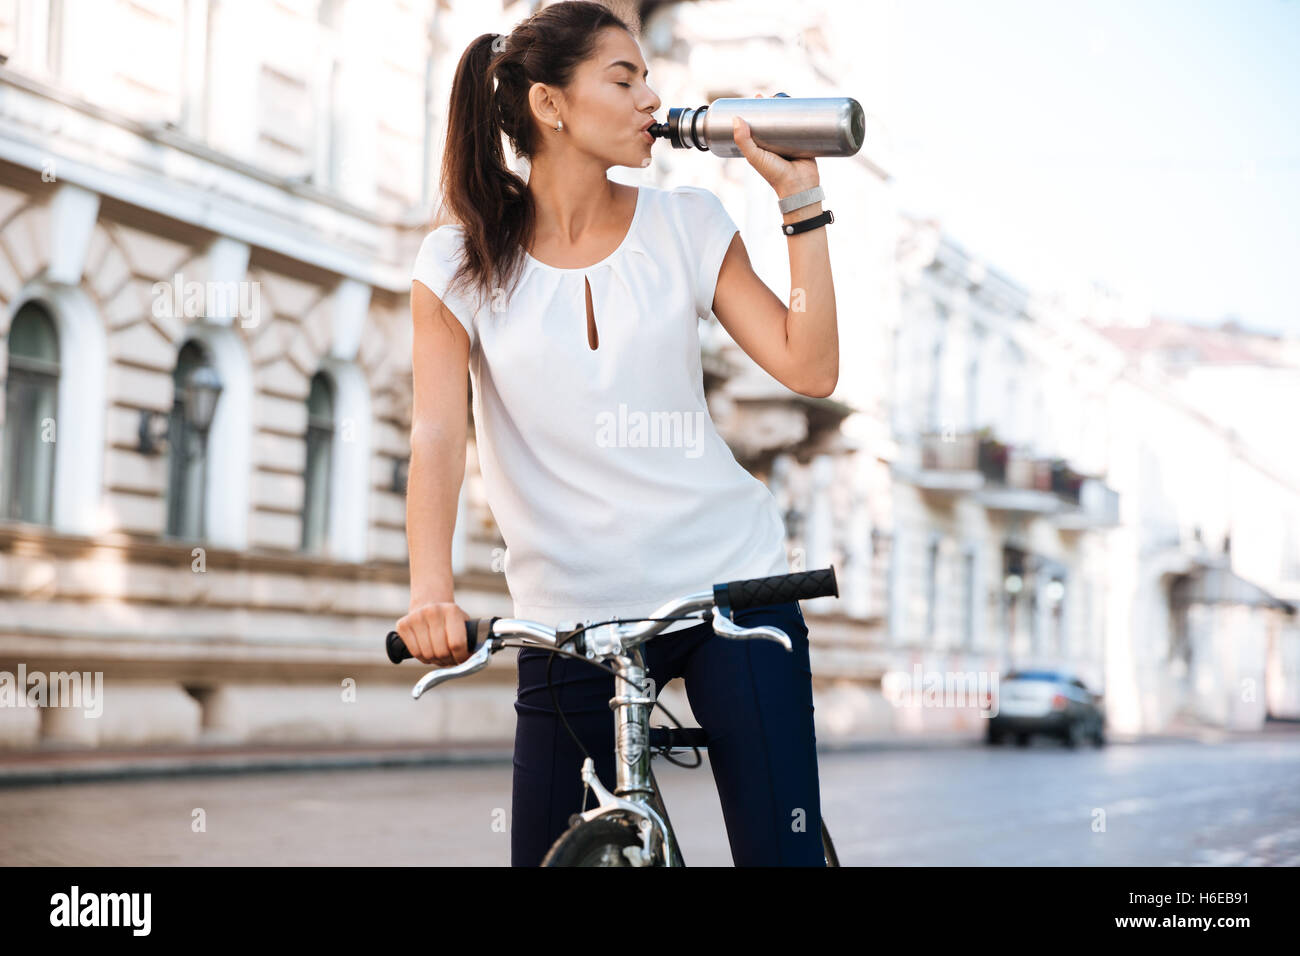 Jeune femme belle l'eau potable de la bouteille tandis que riding bicycle Banque D'Images